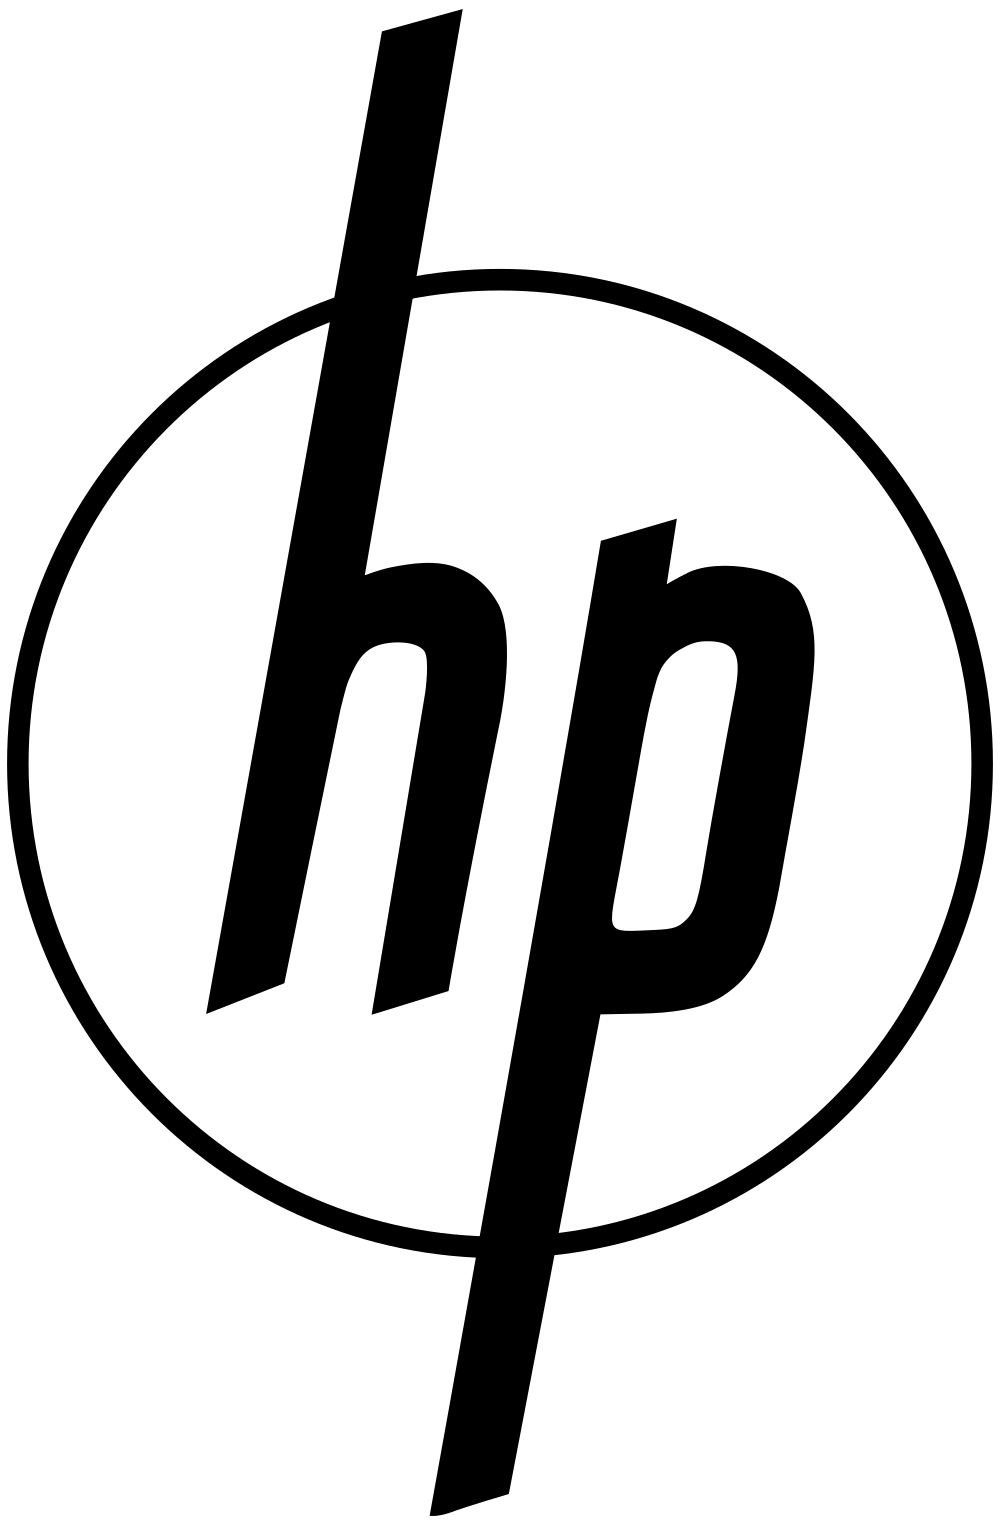 Old HP Logo - HP Original Logo 1954 Trademark.svg